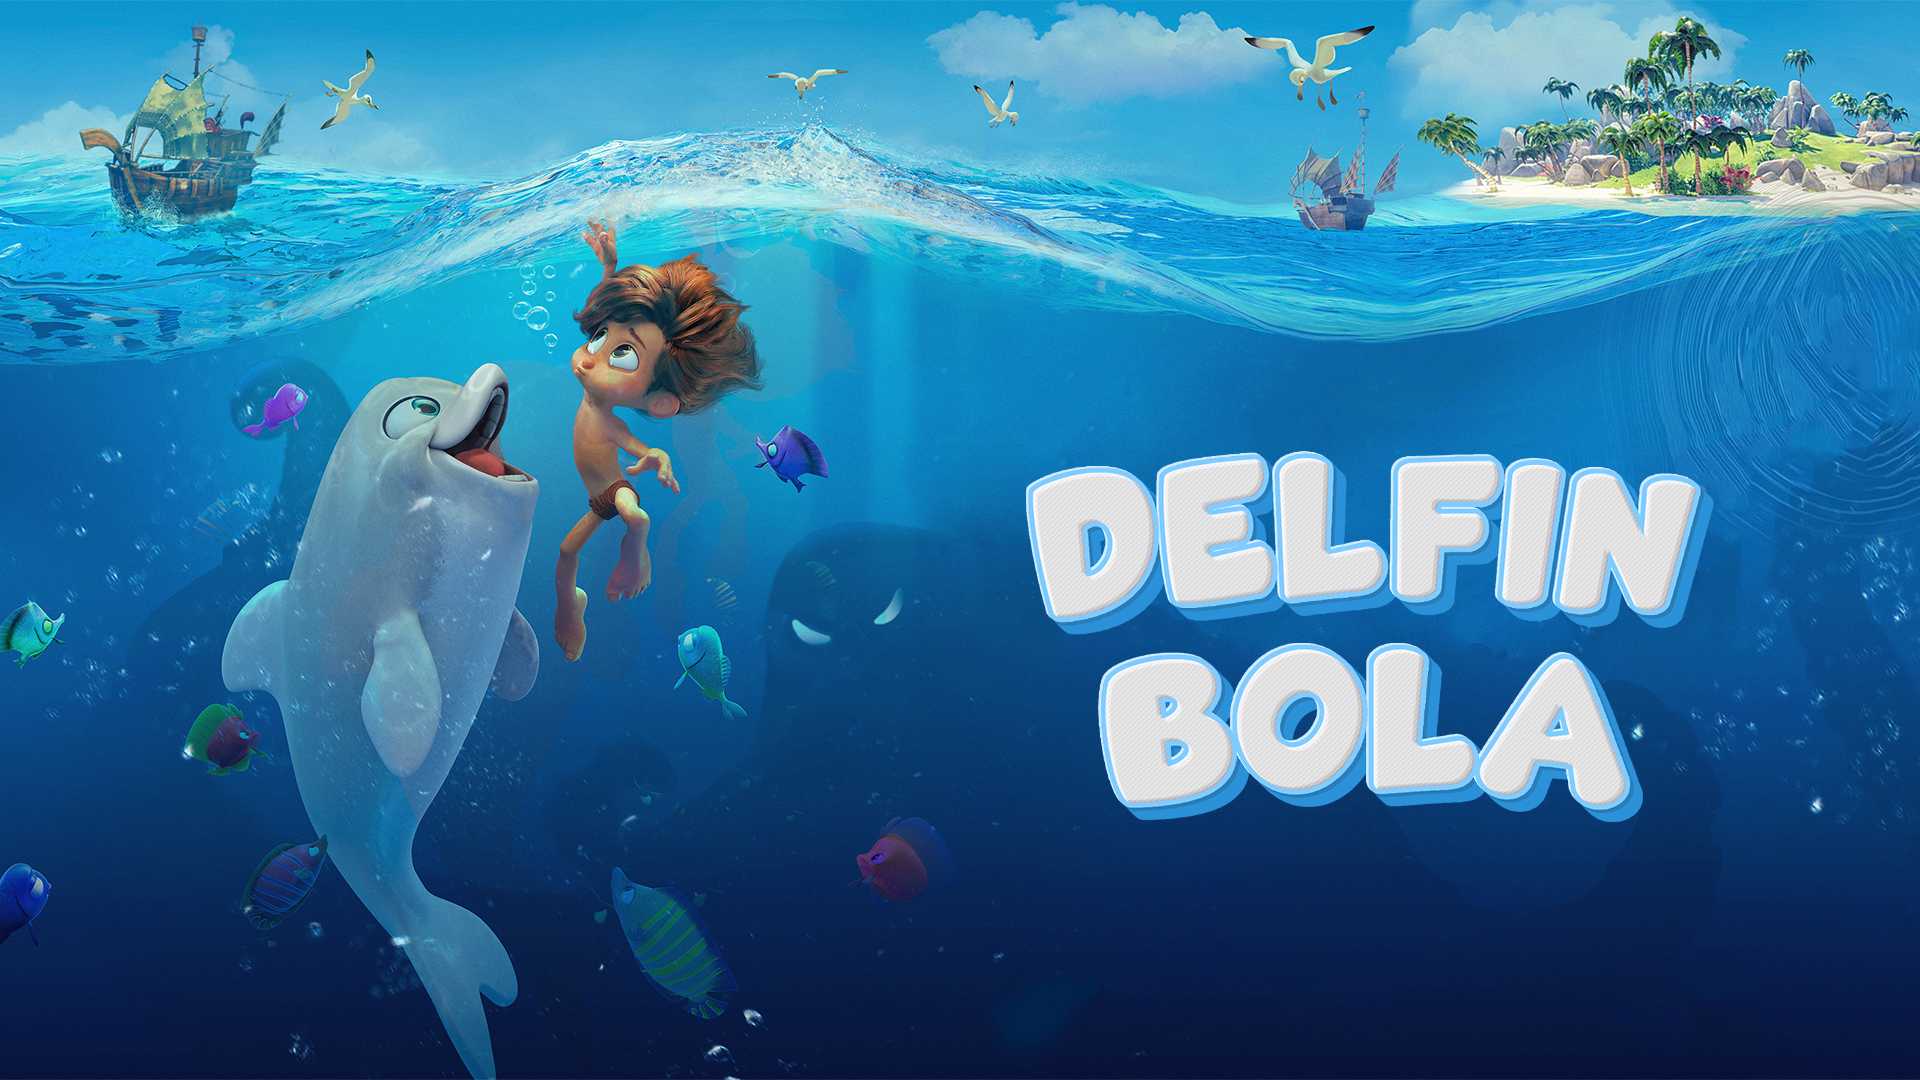 Delfin bola